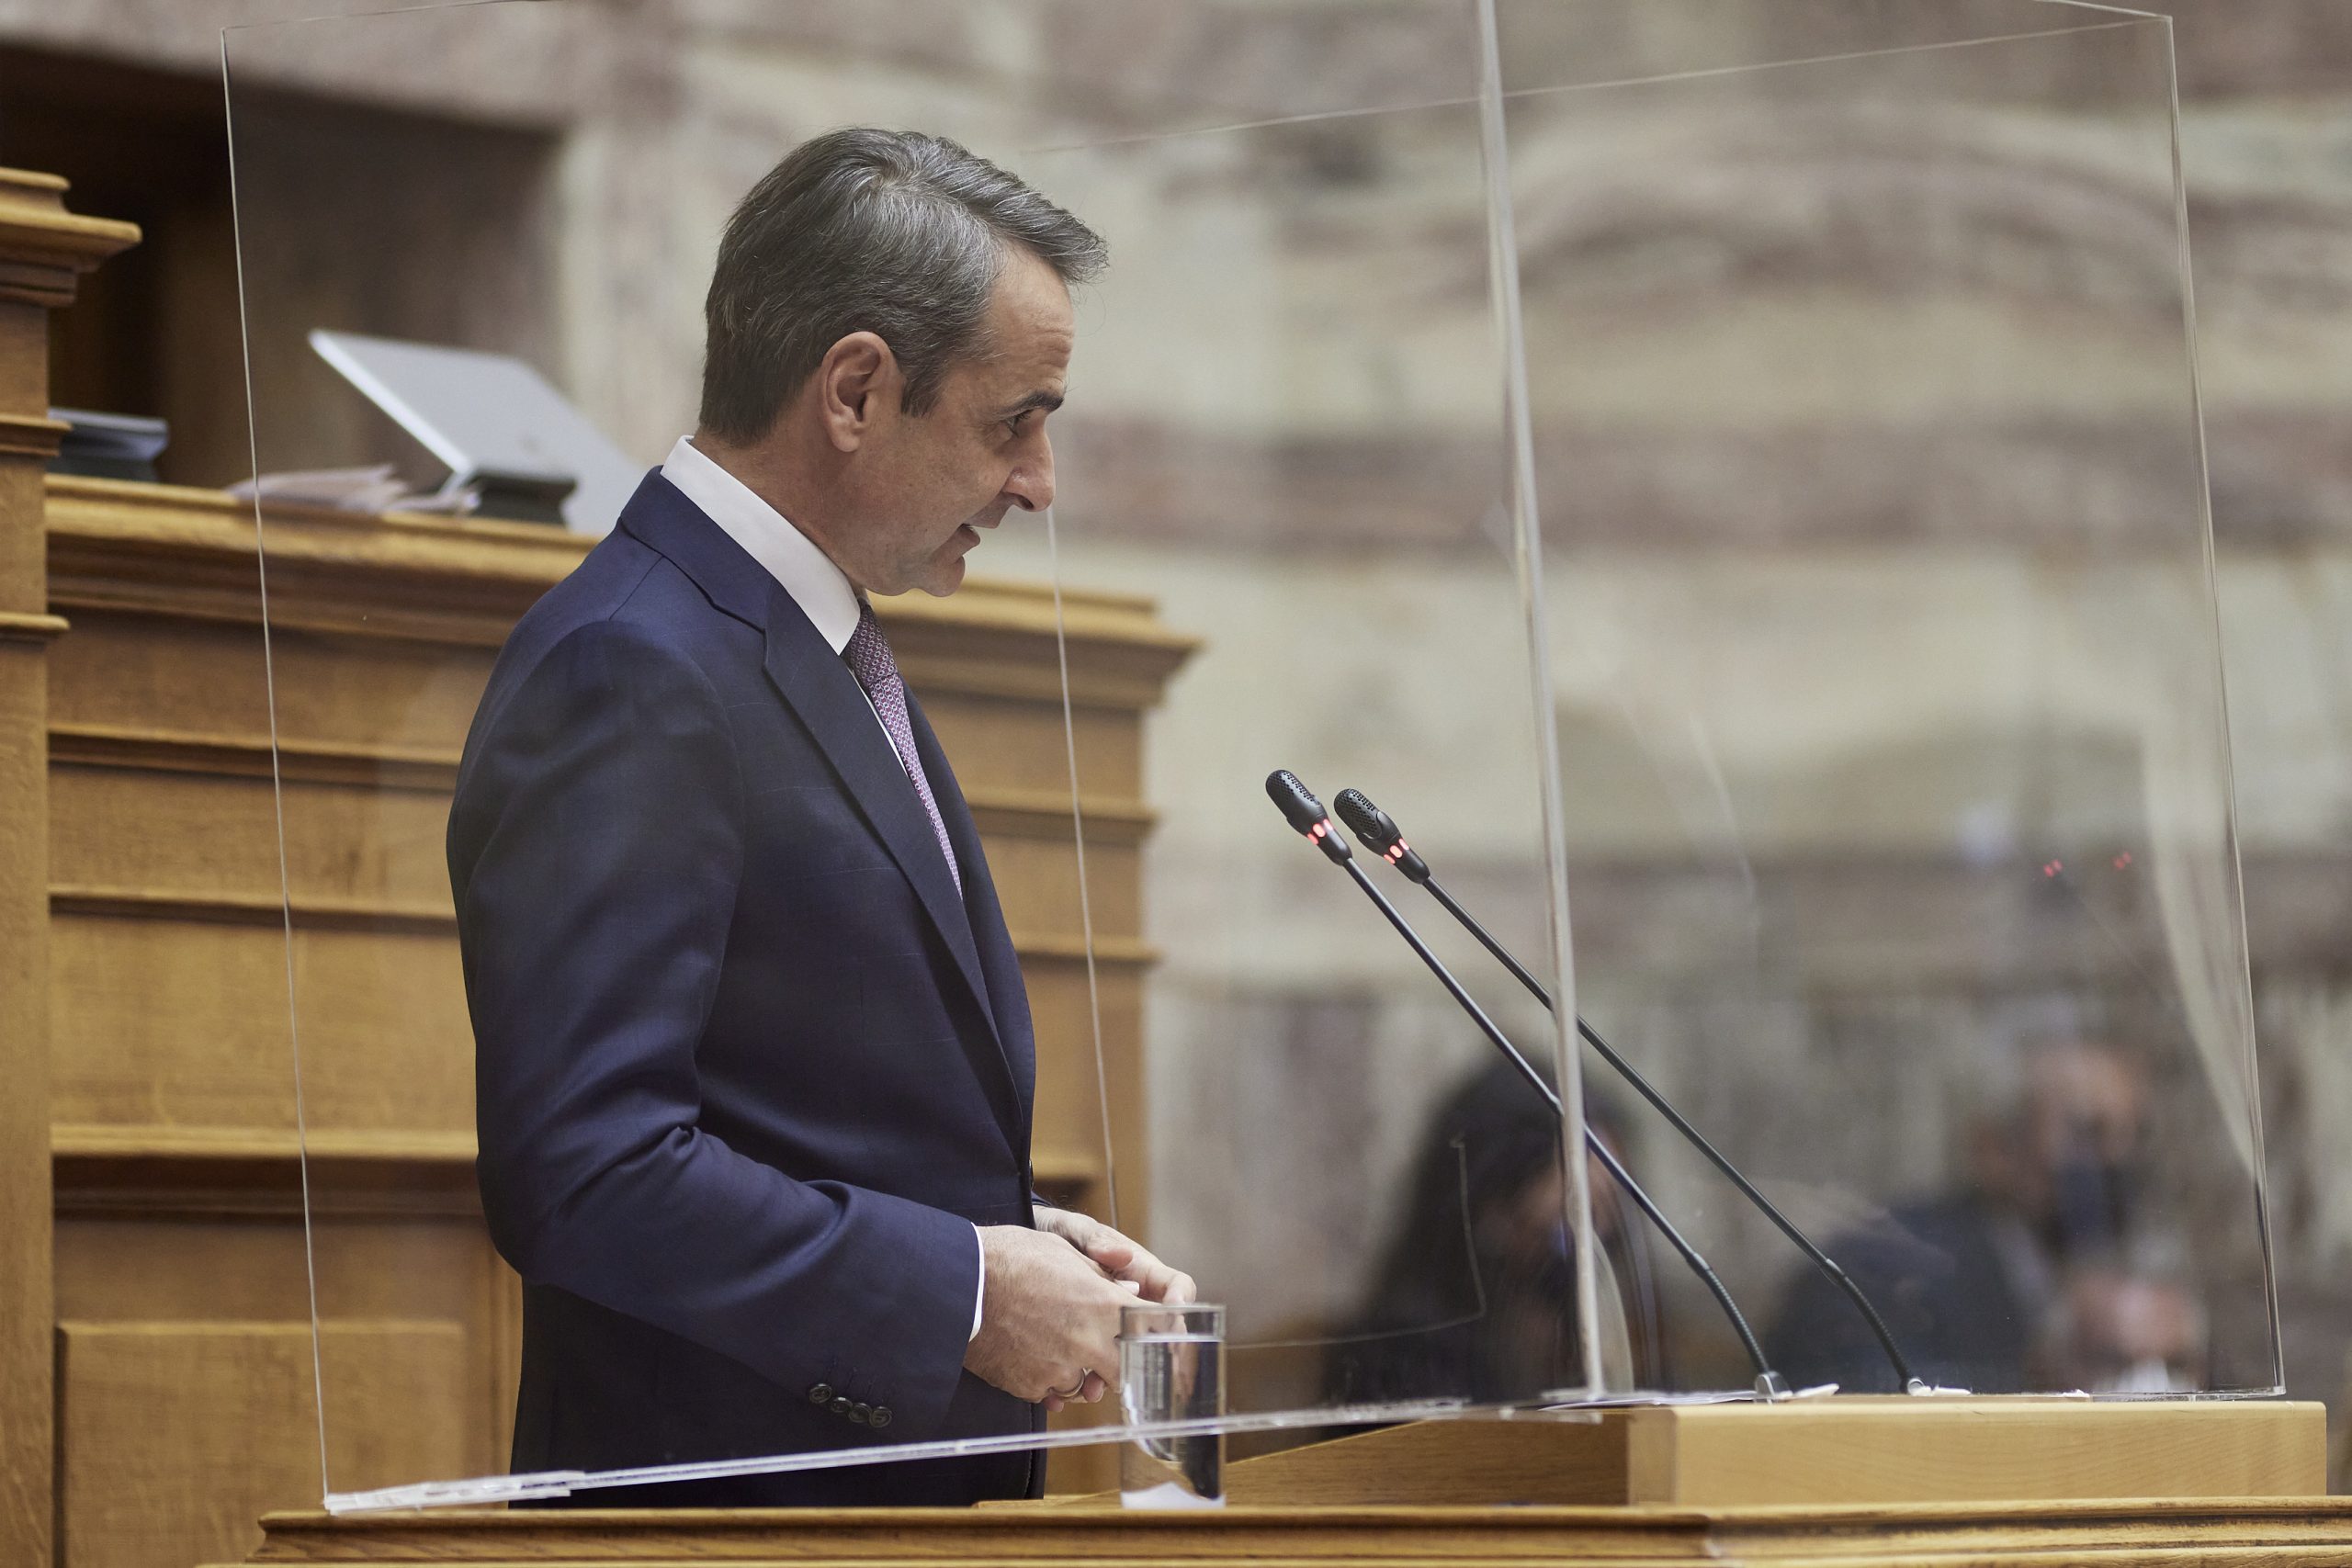 Κυρ. Μητσοτάκης: Η συμφωνία είναι ψήφος εμπιστοσύνης προς την Ελλάδα ως ακλόνητου παράγοντα σταθερότητας